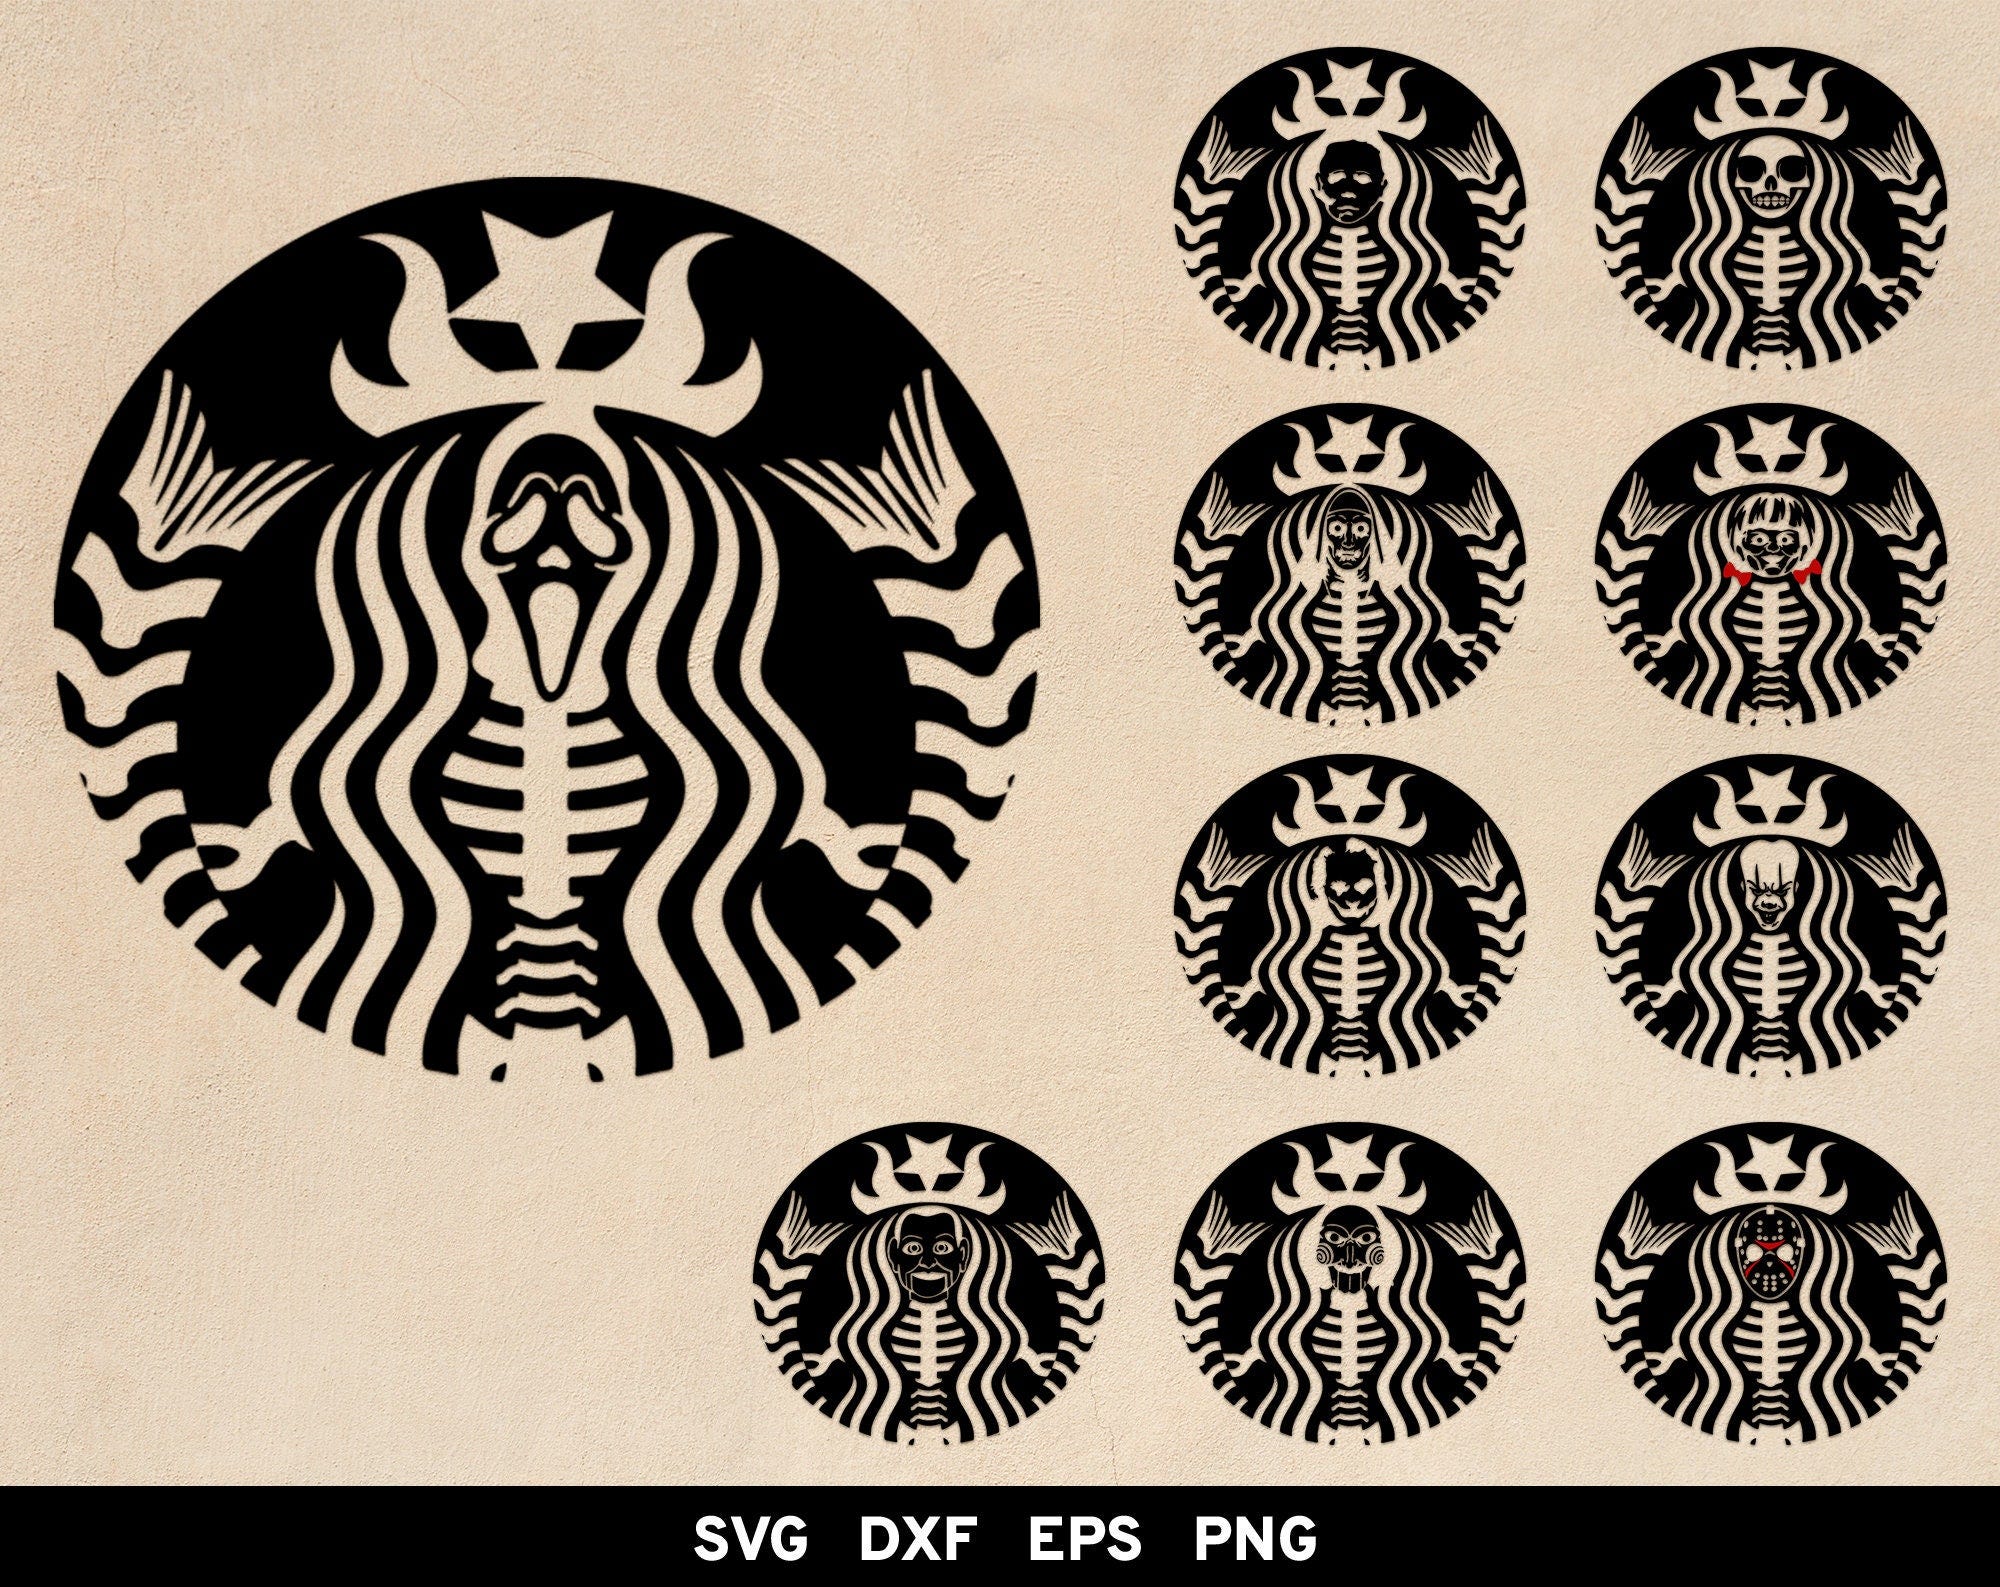 Starbucks horror svg, Starbucks Skeleton svg, Starbucks logo Bundle, Halloween svg, Horror movie svg, Scream, Jason svg, Cricut Silhouette